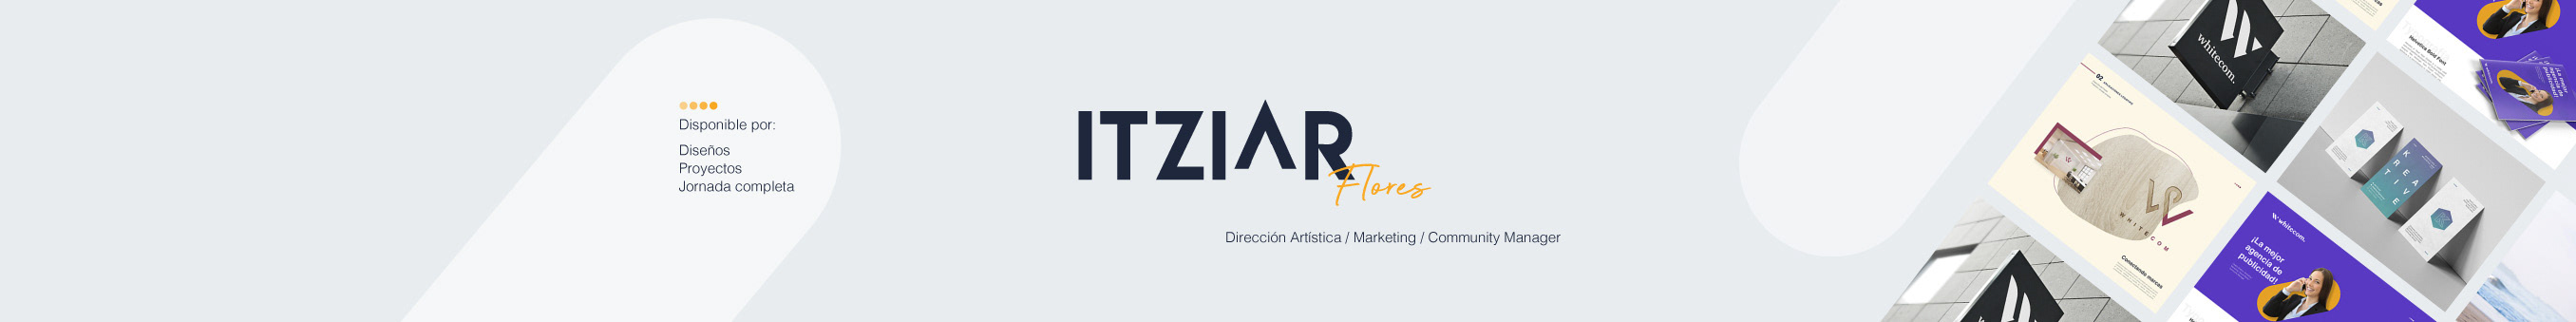 Itz Flores ✪ profil başlığı